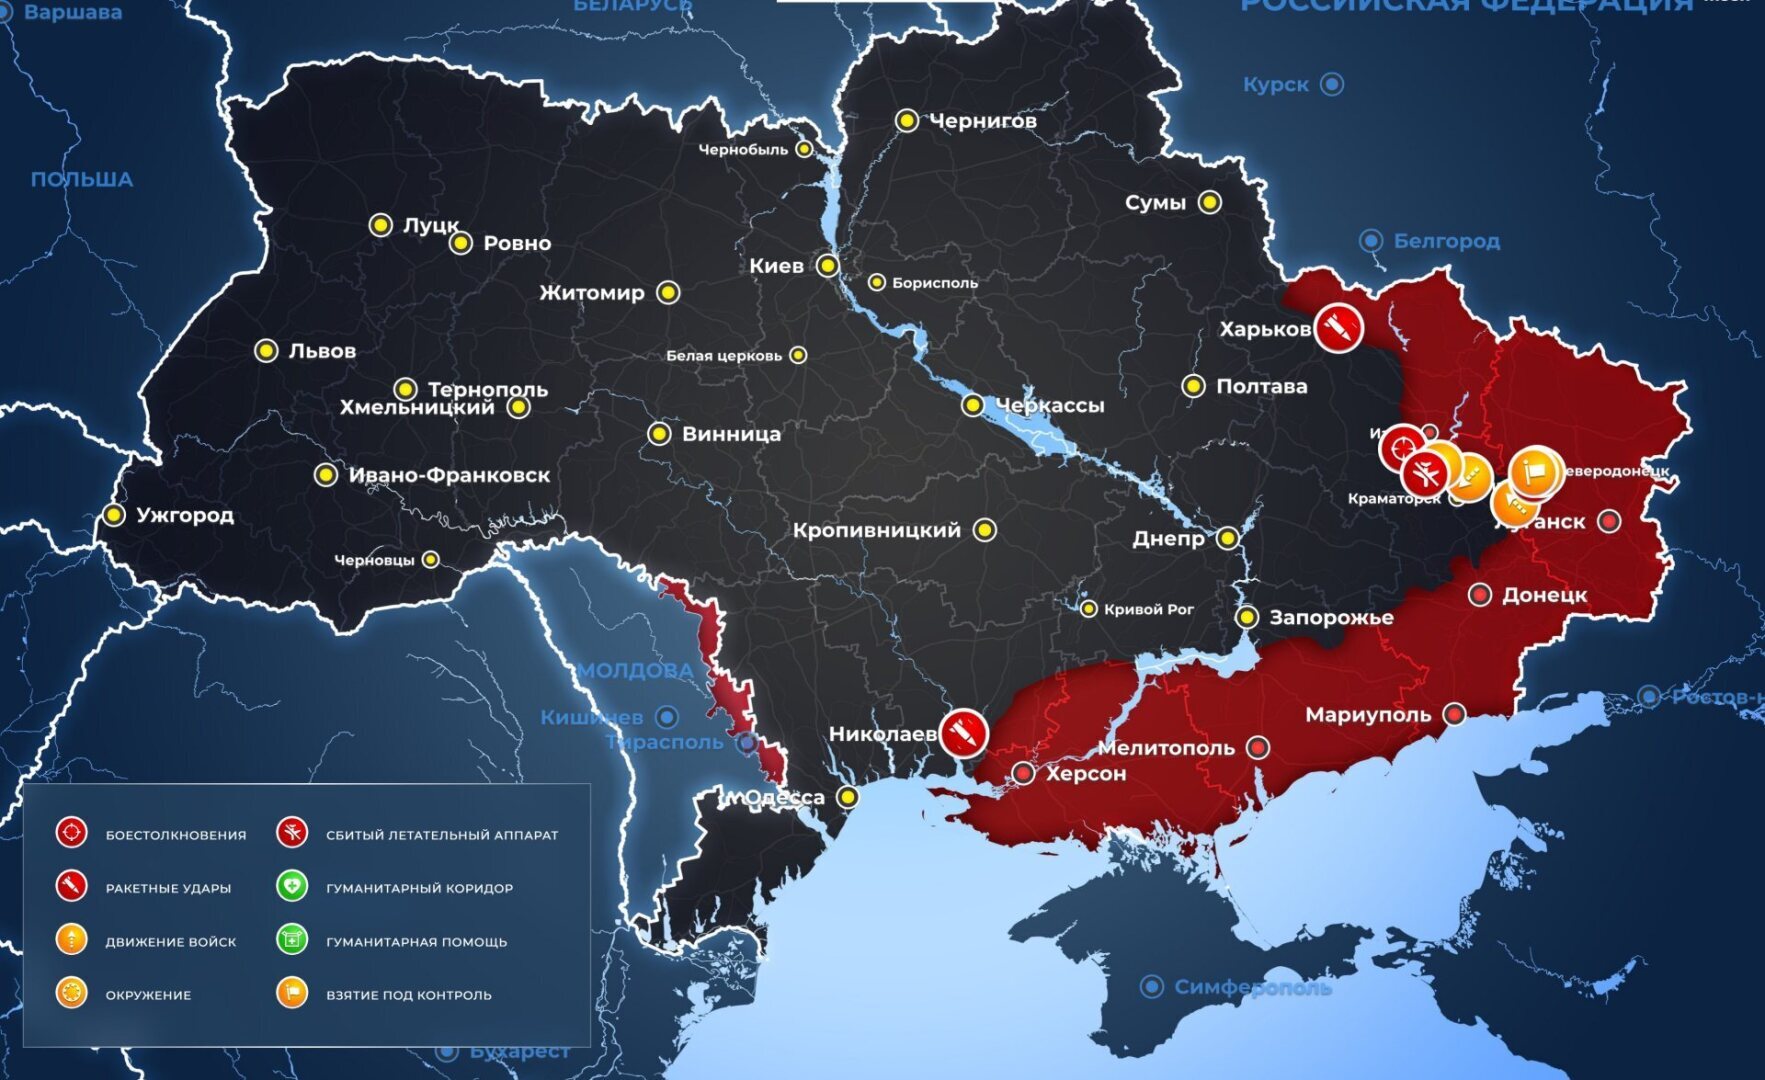 Карта украины сегодня 26 февраля. Карта Украины. Карта боевых действий на Украине. Карта Украины боевые действия сейчас 2022. Карта Украины сейчас.